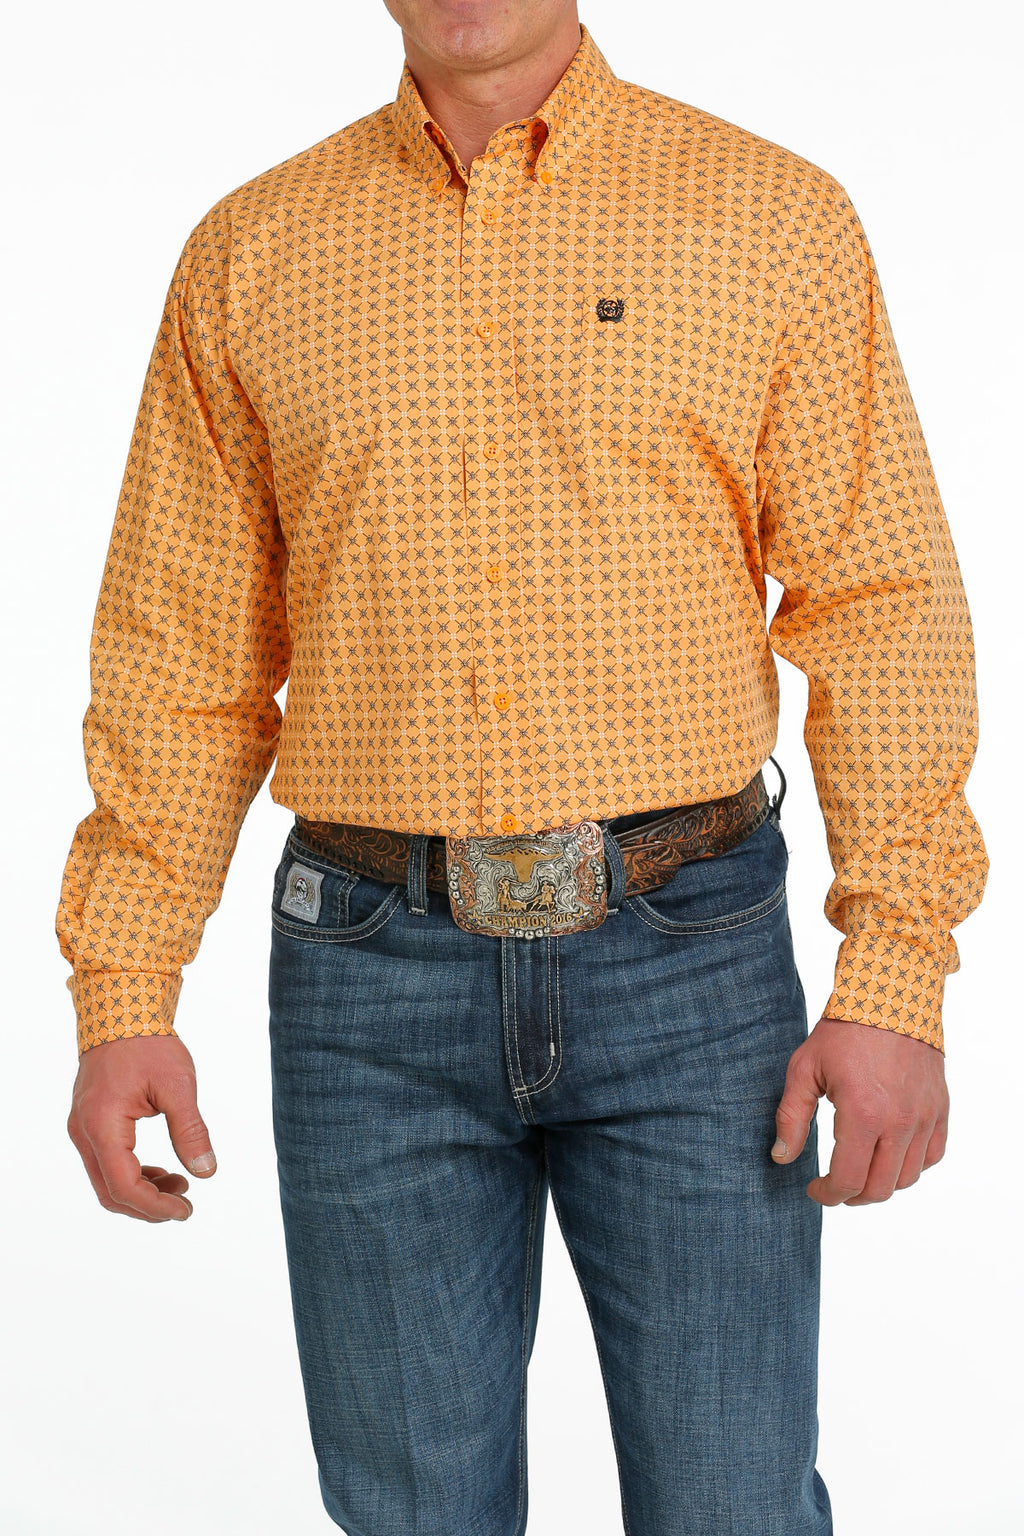 CINCH Men's Orange Button-Down Western Shirt